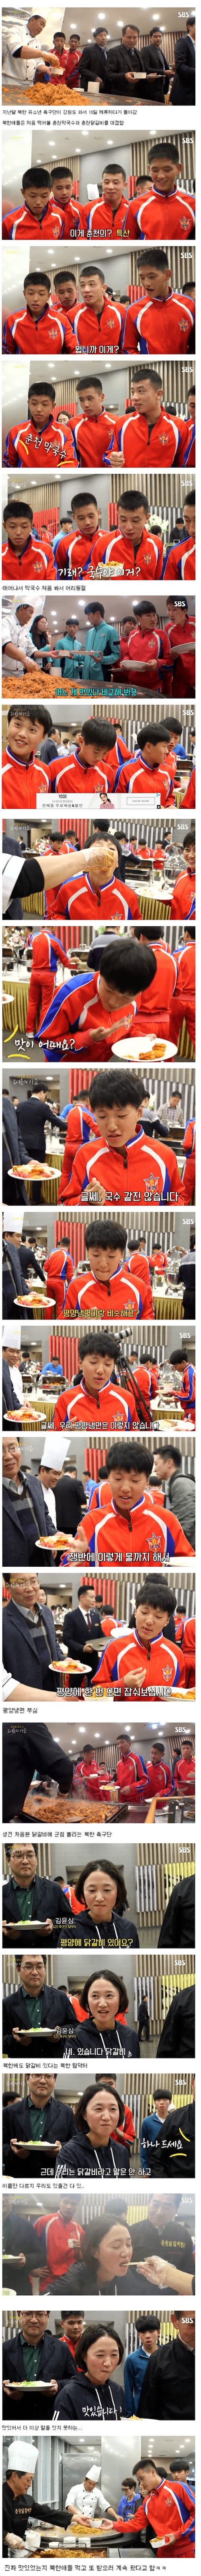 남한의 닭갈비를 먹게 된 북한 운동선수들